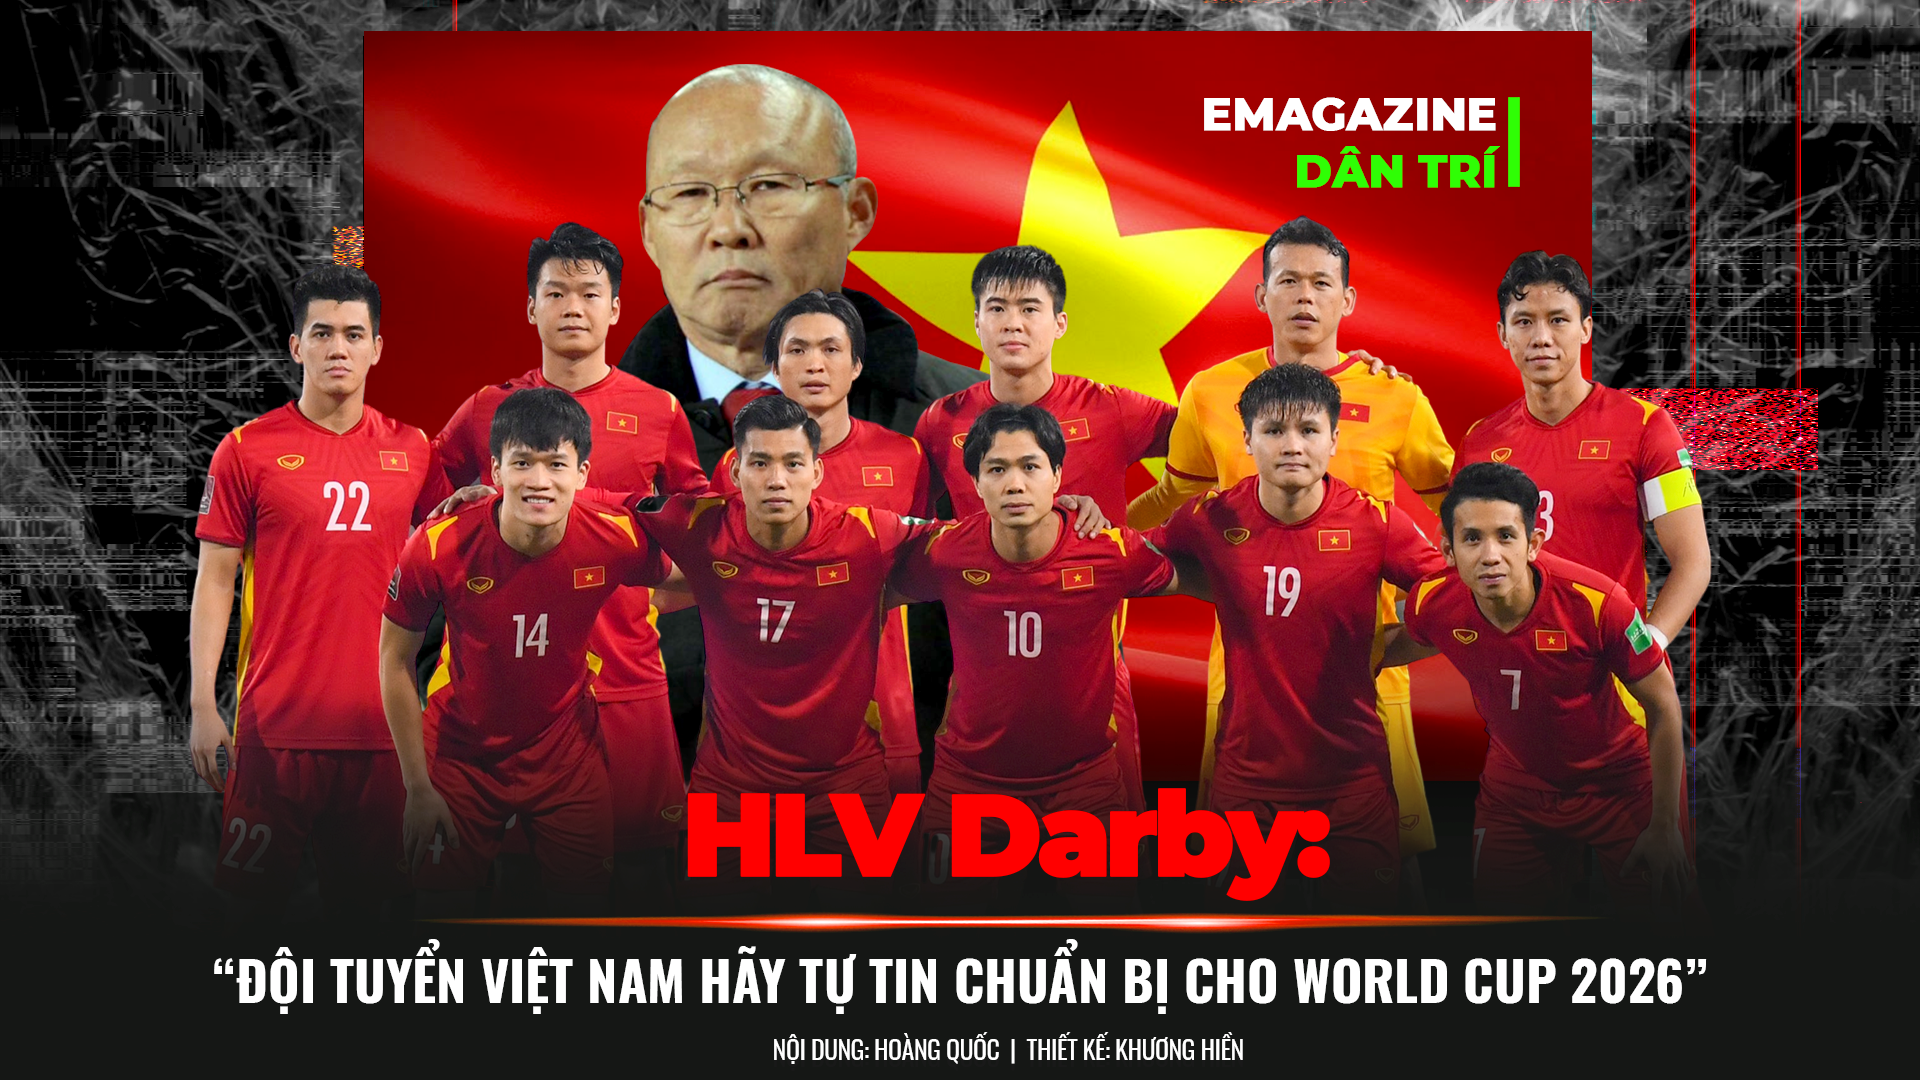 HLV Darby nêu điểm yếu cốt tử của các cầu thủ ngôi sao bóng đá Việt Nam